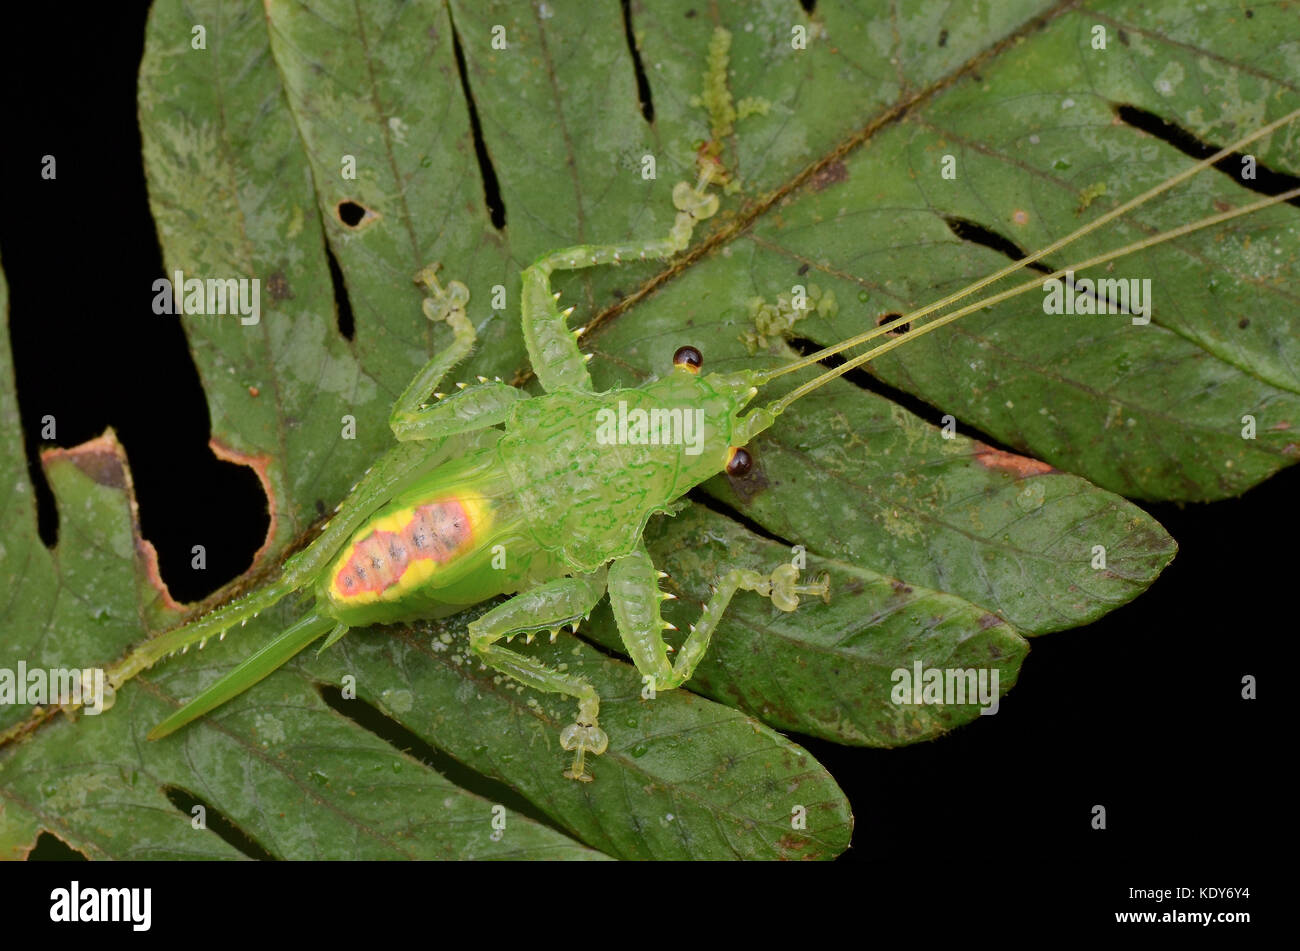 Bella ninfa katydid sulla foglia verde Foto Stock